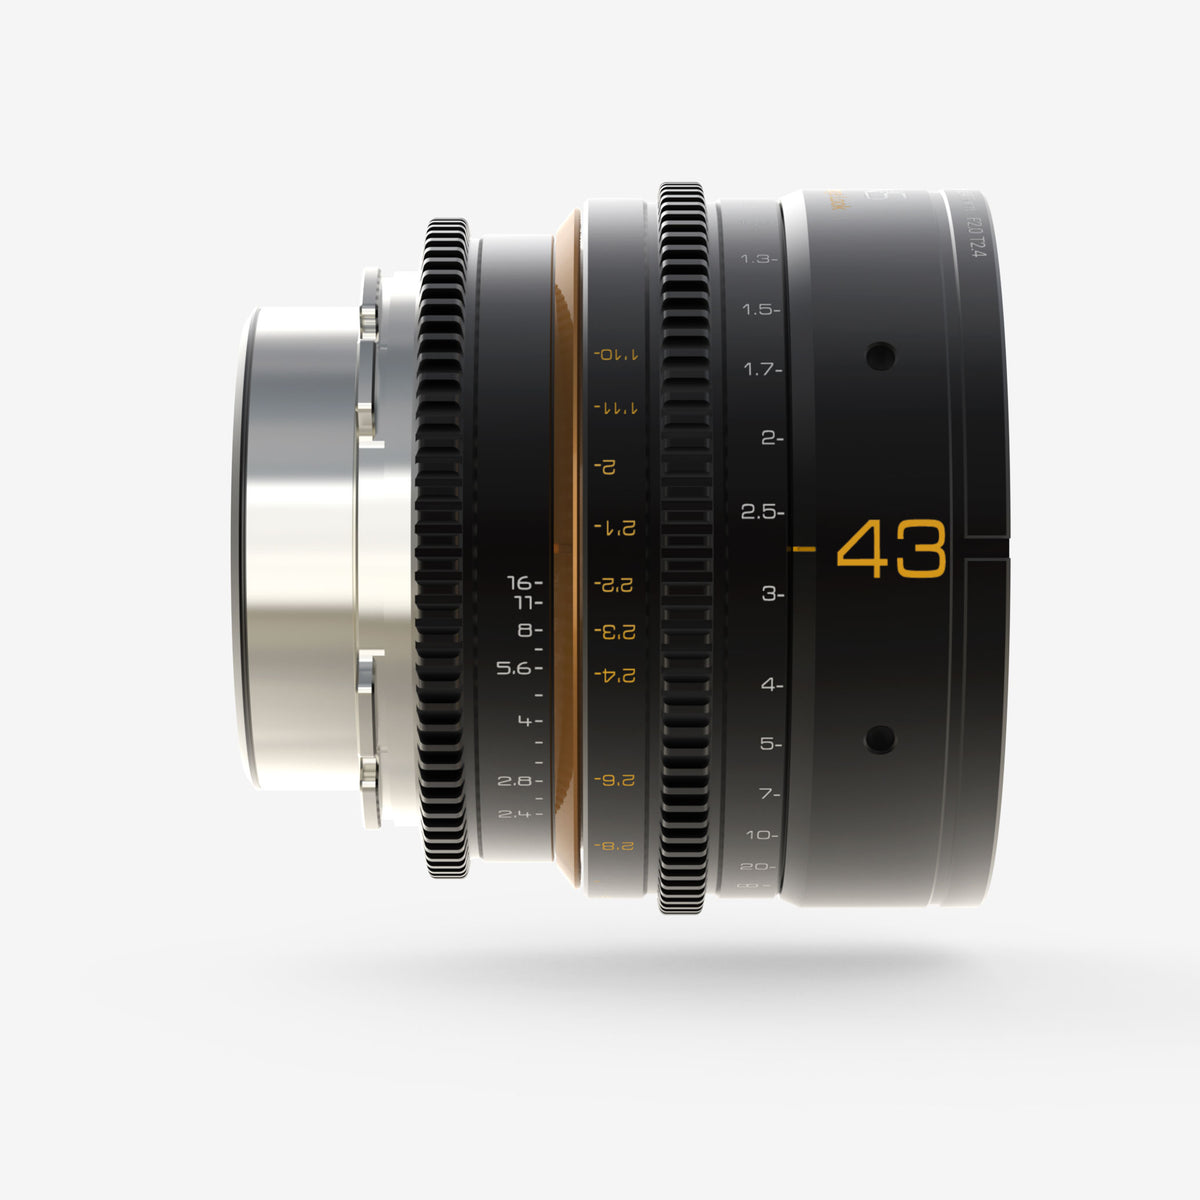 Dulens APO Mini Prime 43mm T2.4 Lens